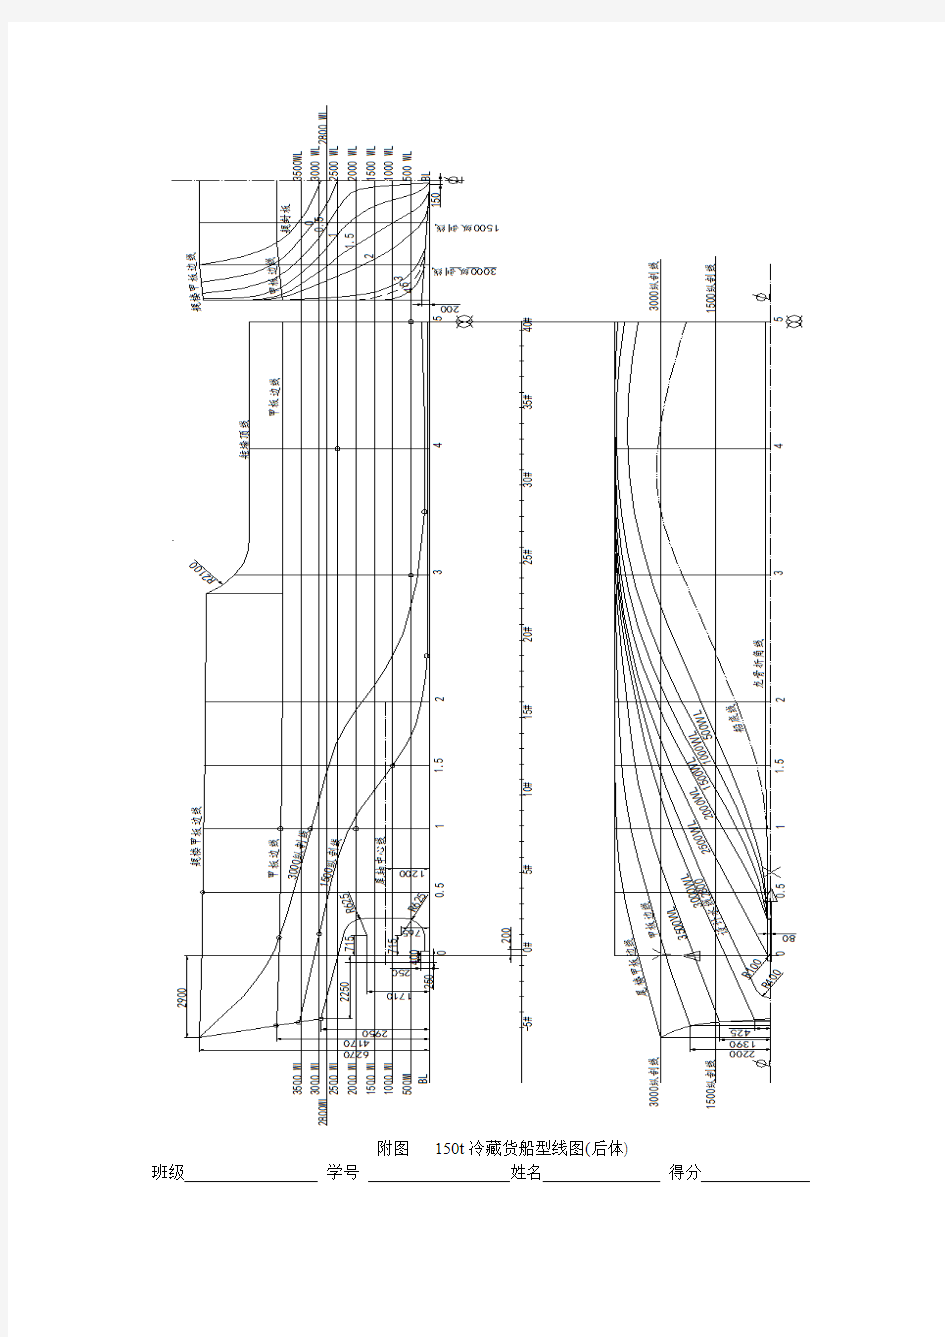 型线图单元测试 型线图读图练习(点、曲线、曲面投影)附图-集美大学船体结构与制图课内用